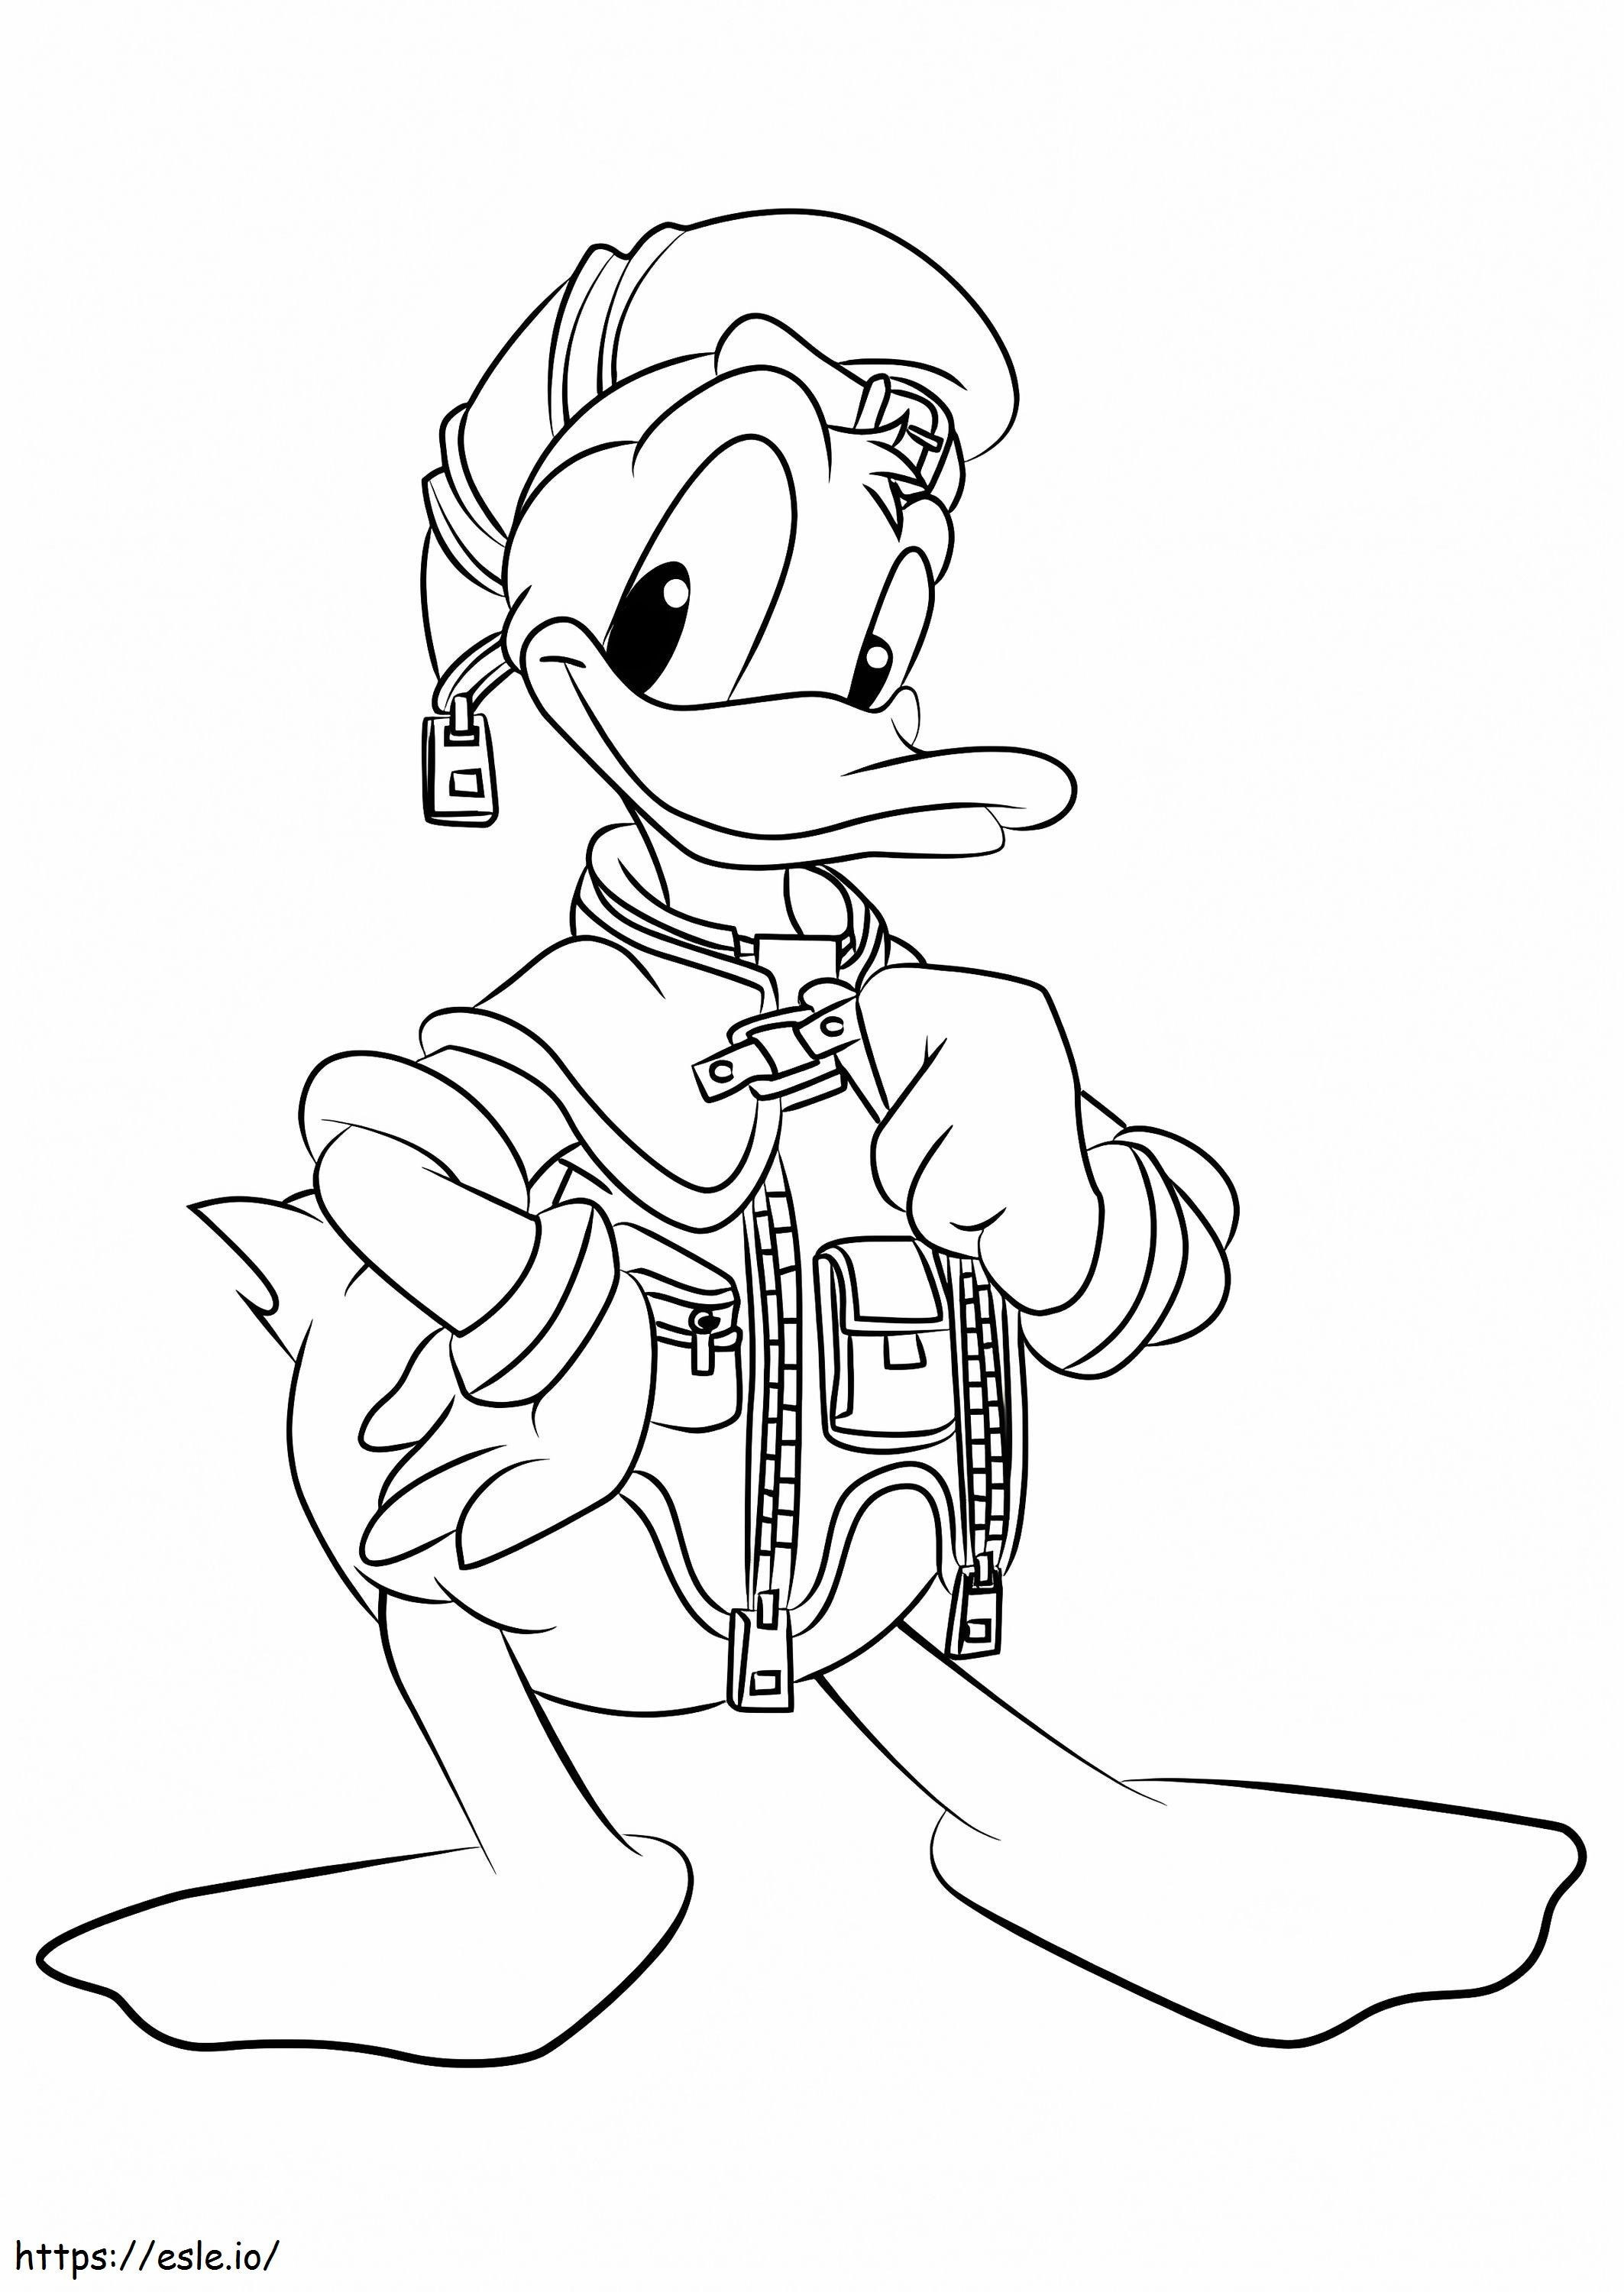 Donald Duck uit Kingdom Hearts kleurplaat kleurplaat